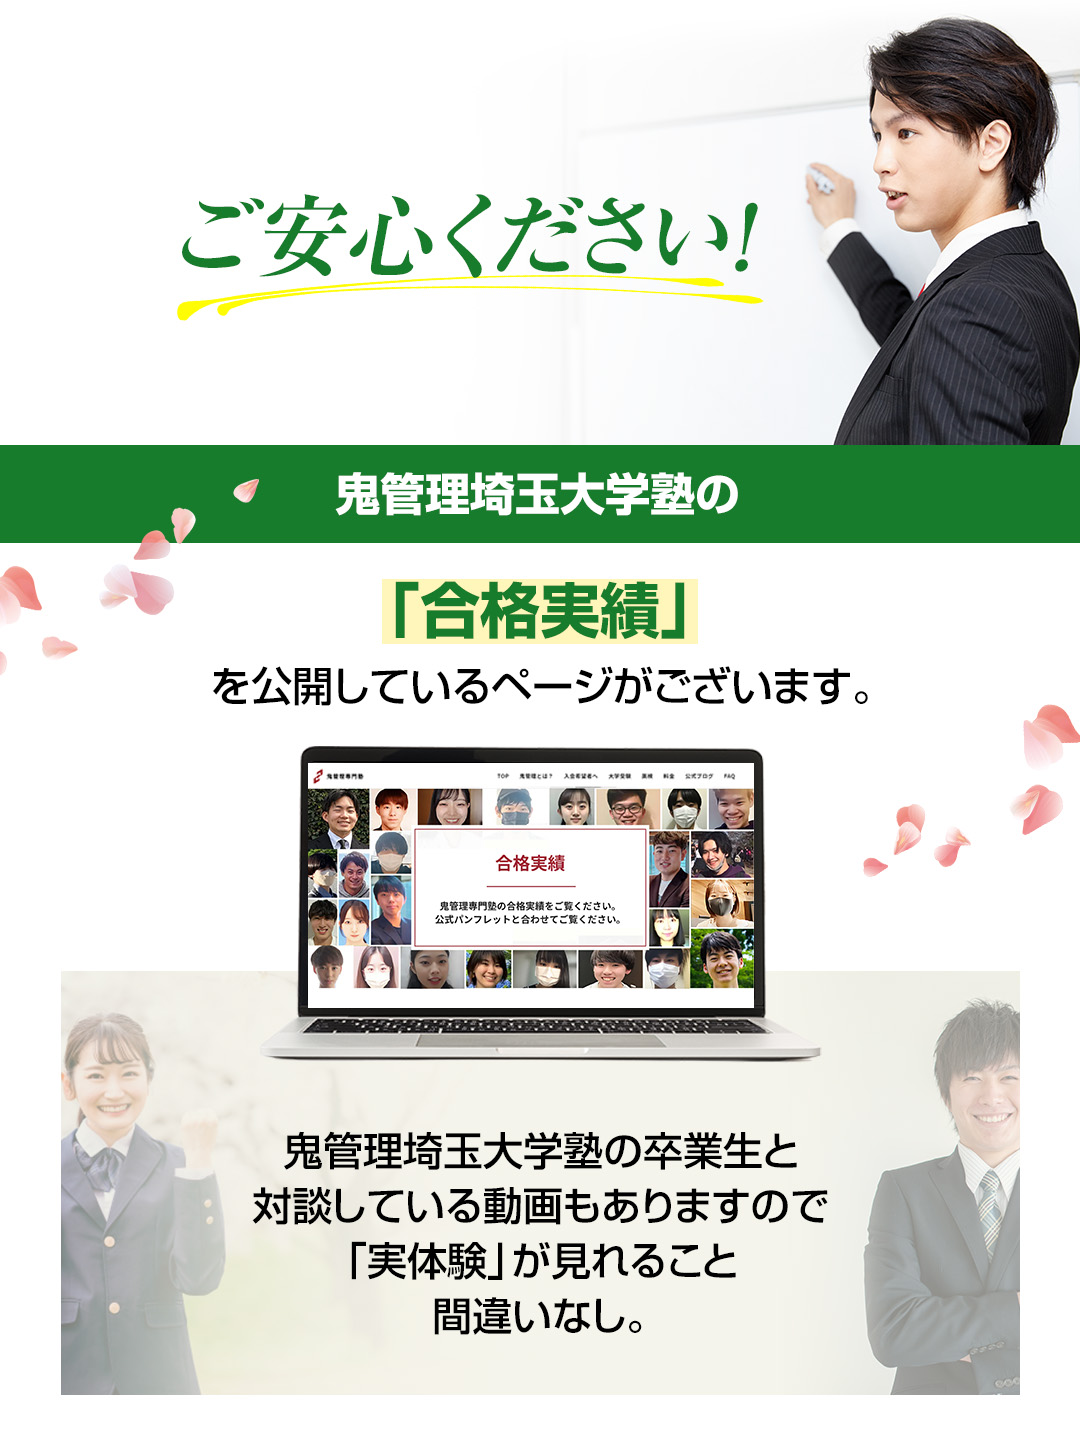 鬼管理埼玉大学塾の「合格実績」を公開しているページがございます